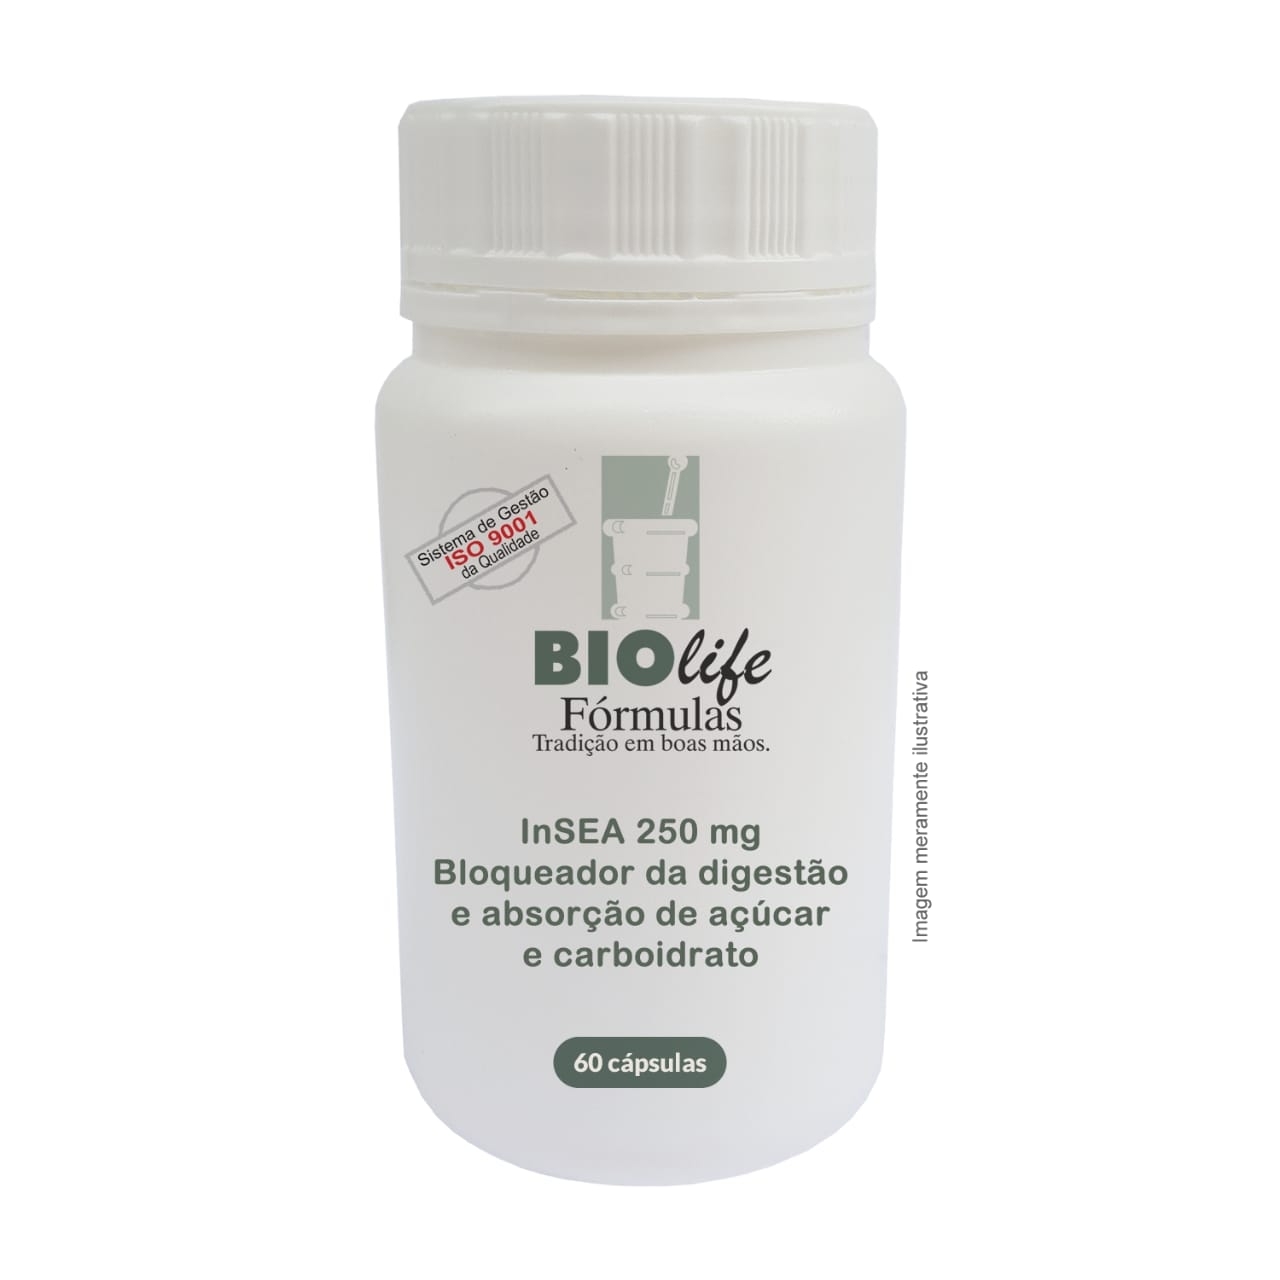 INSEA 250mg com 60 caps- Bloqueador da digestão e absorção de açúcar e carboidrato! - BioLife